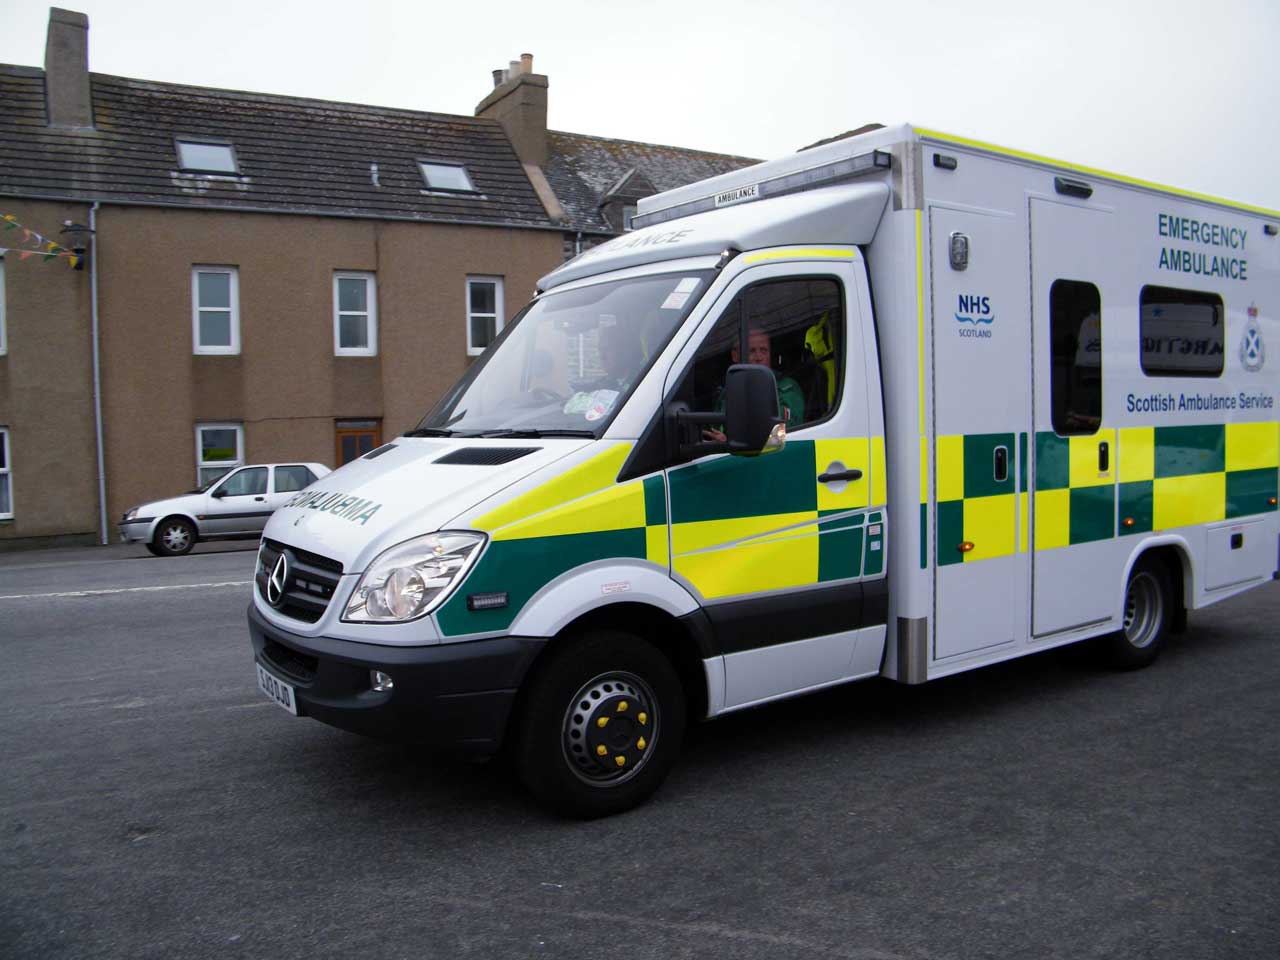 Photo: Ambulance